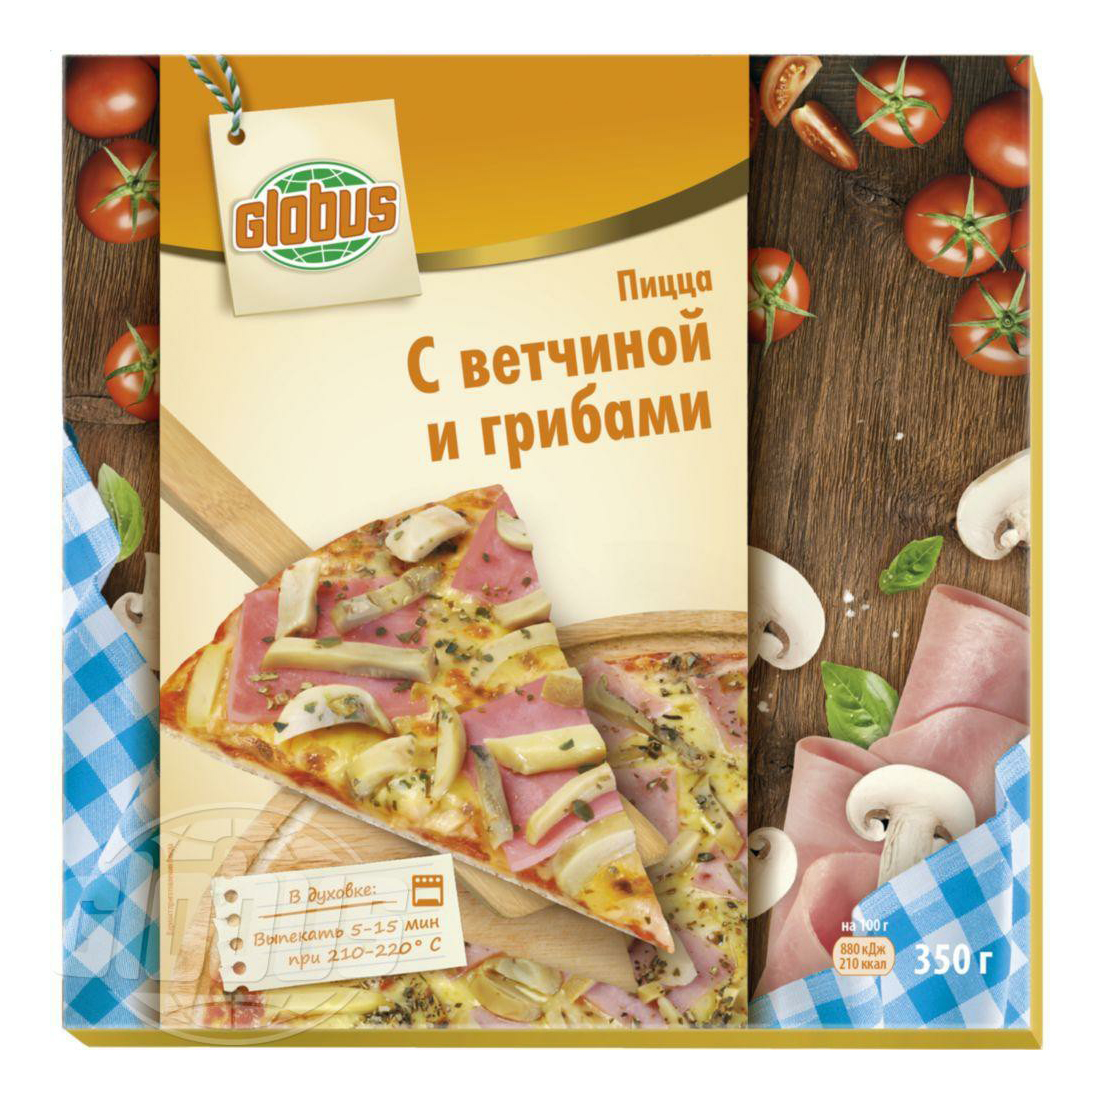 Пицца Globus с ветчиной и грибами замороженная 350 г